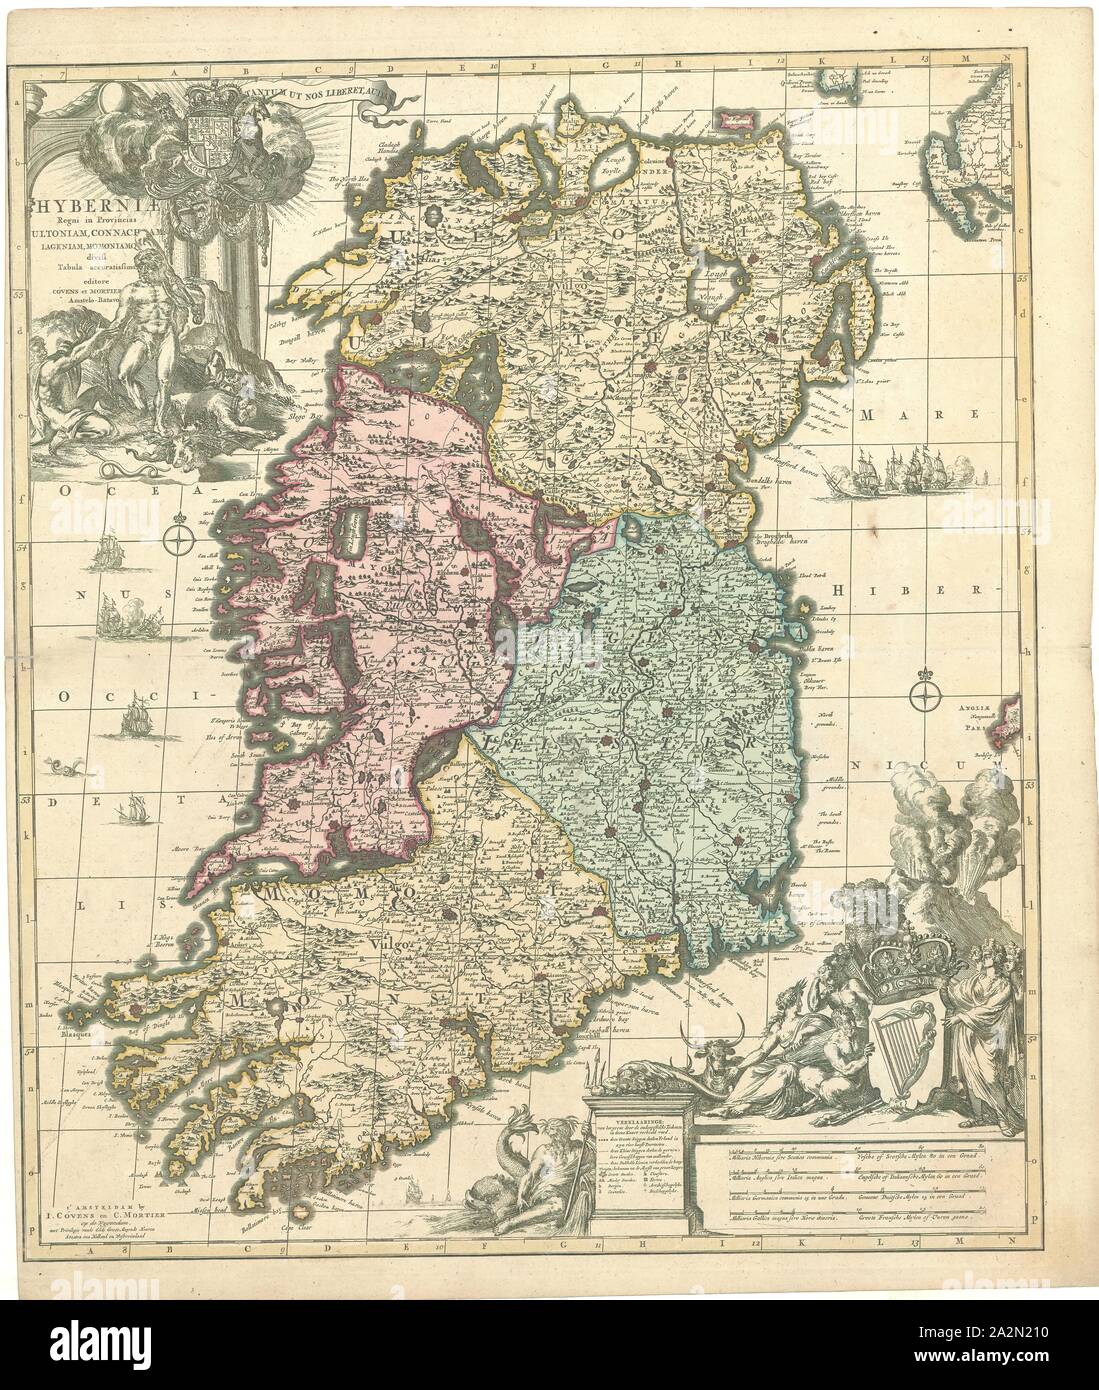 Map, Hyberniæ regni in provincias Ultoniam, Connacham, Lageniam, Momoniamq. divisi tabula accuratissima, Johannes Covens (1697-1774), Copperplate print Stock Photo